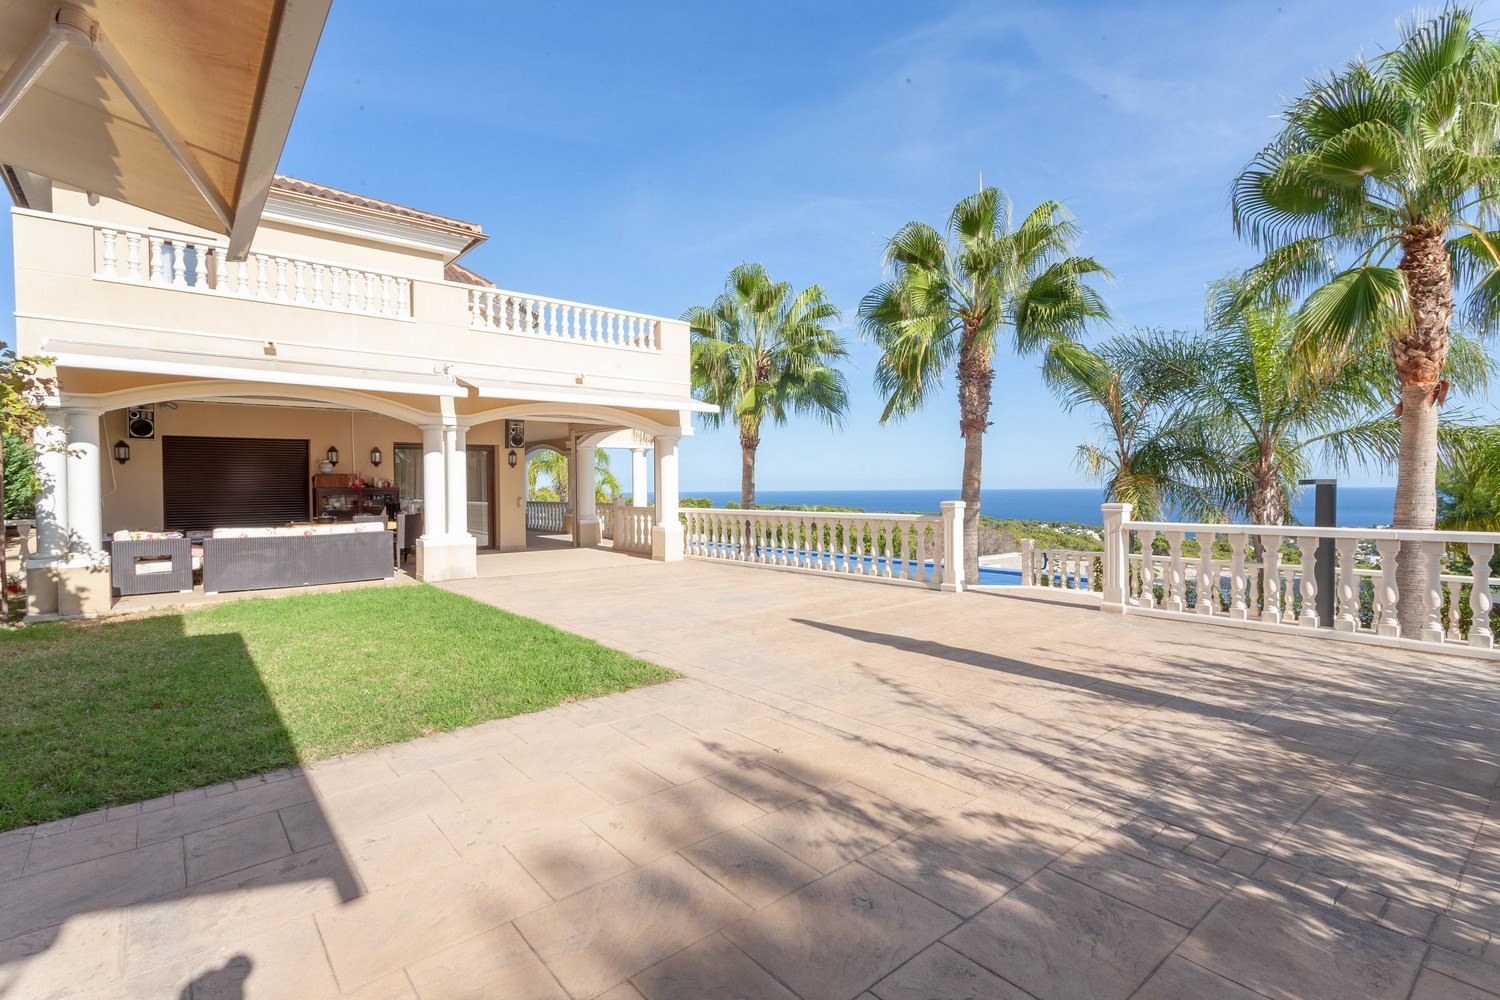 Mediterranean style villa for sale in Benissa, Costa Blanca